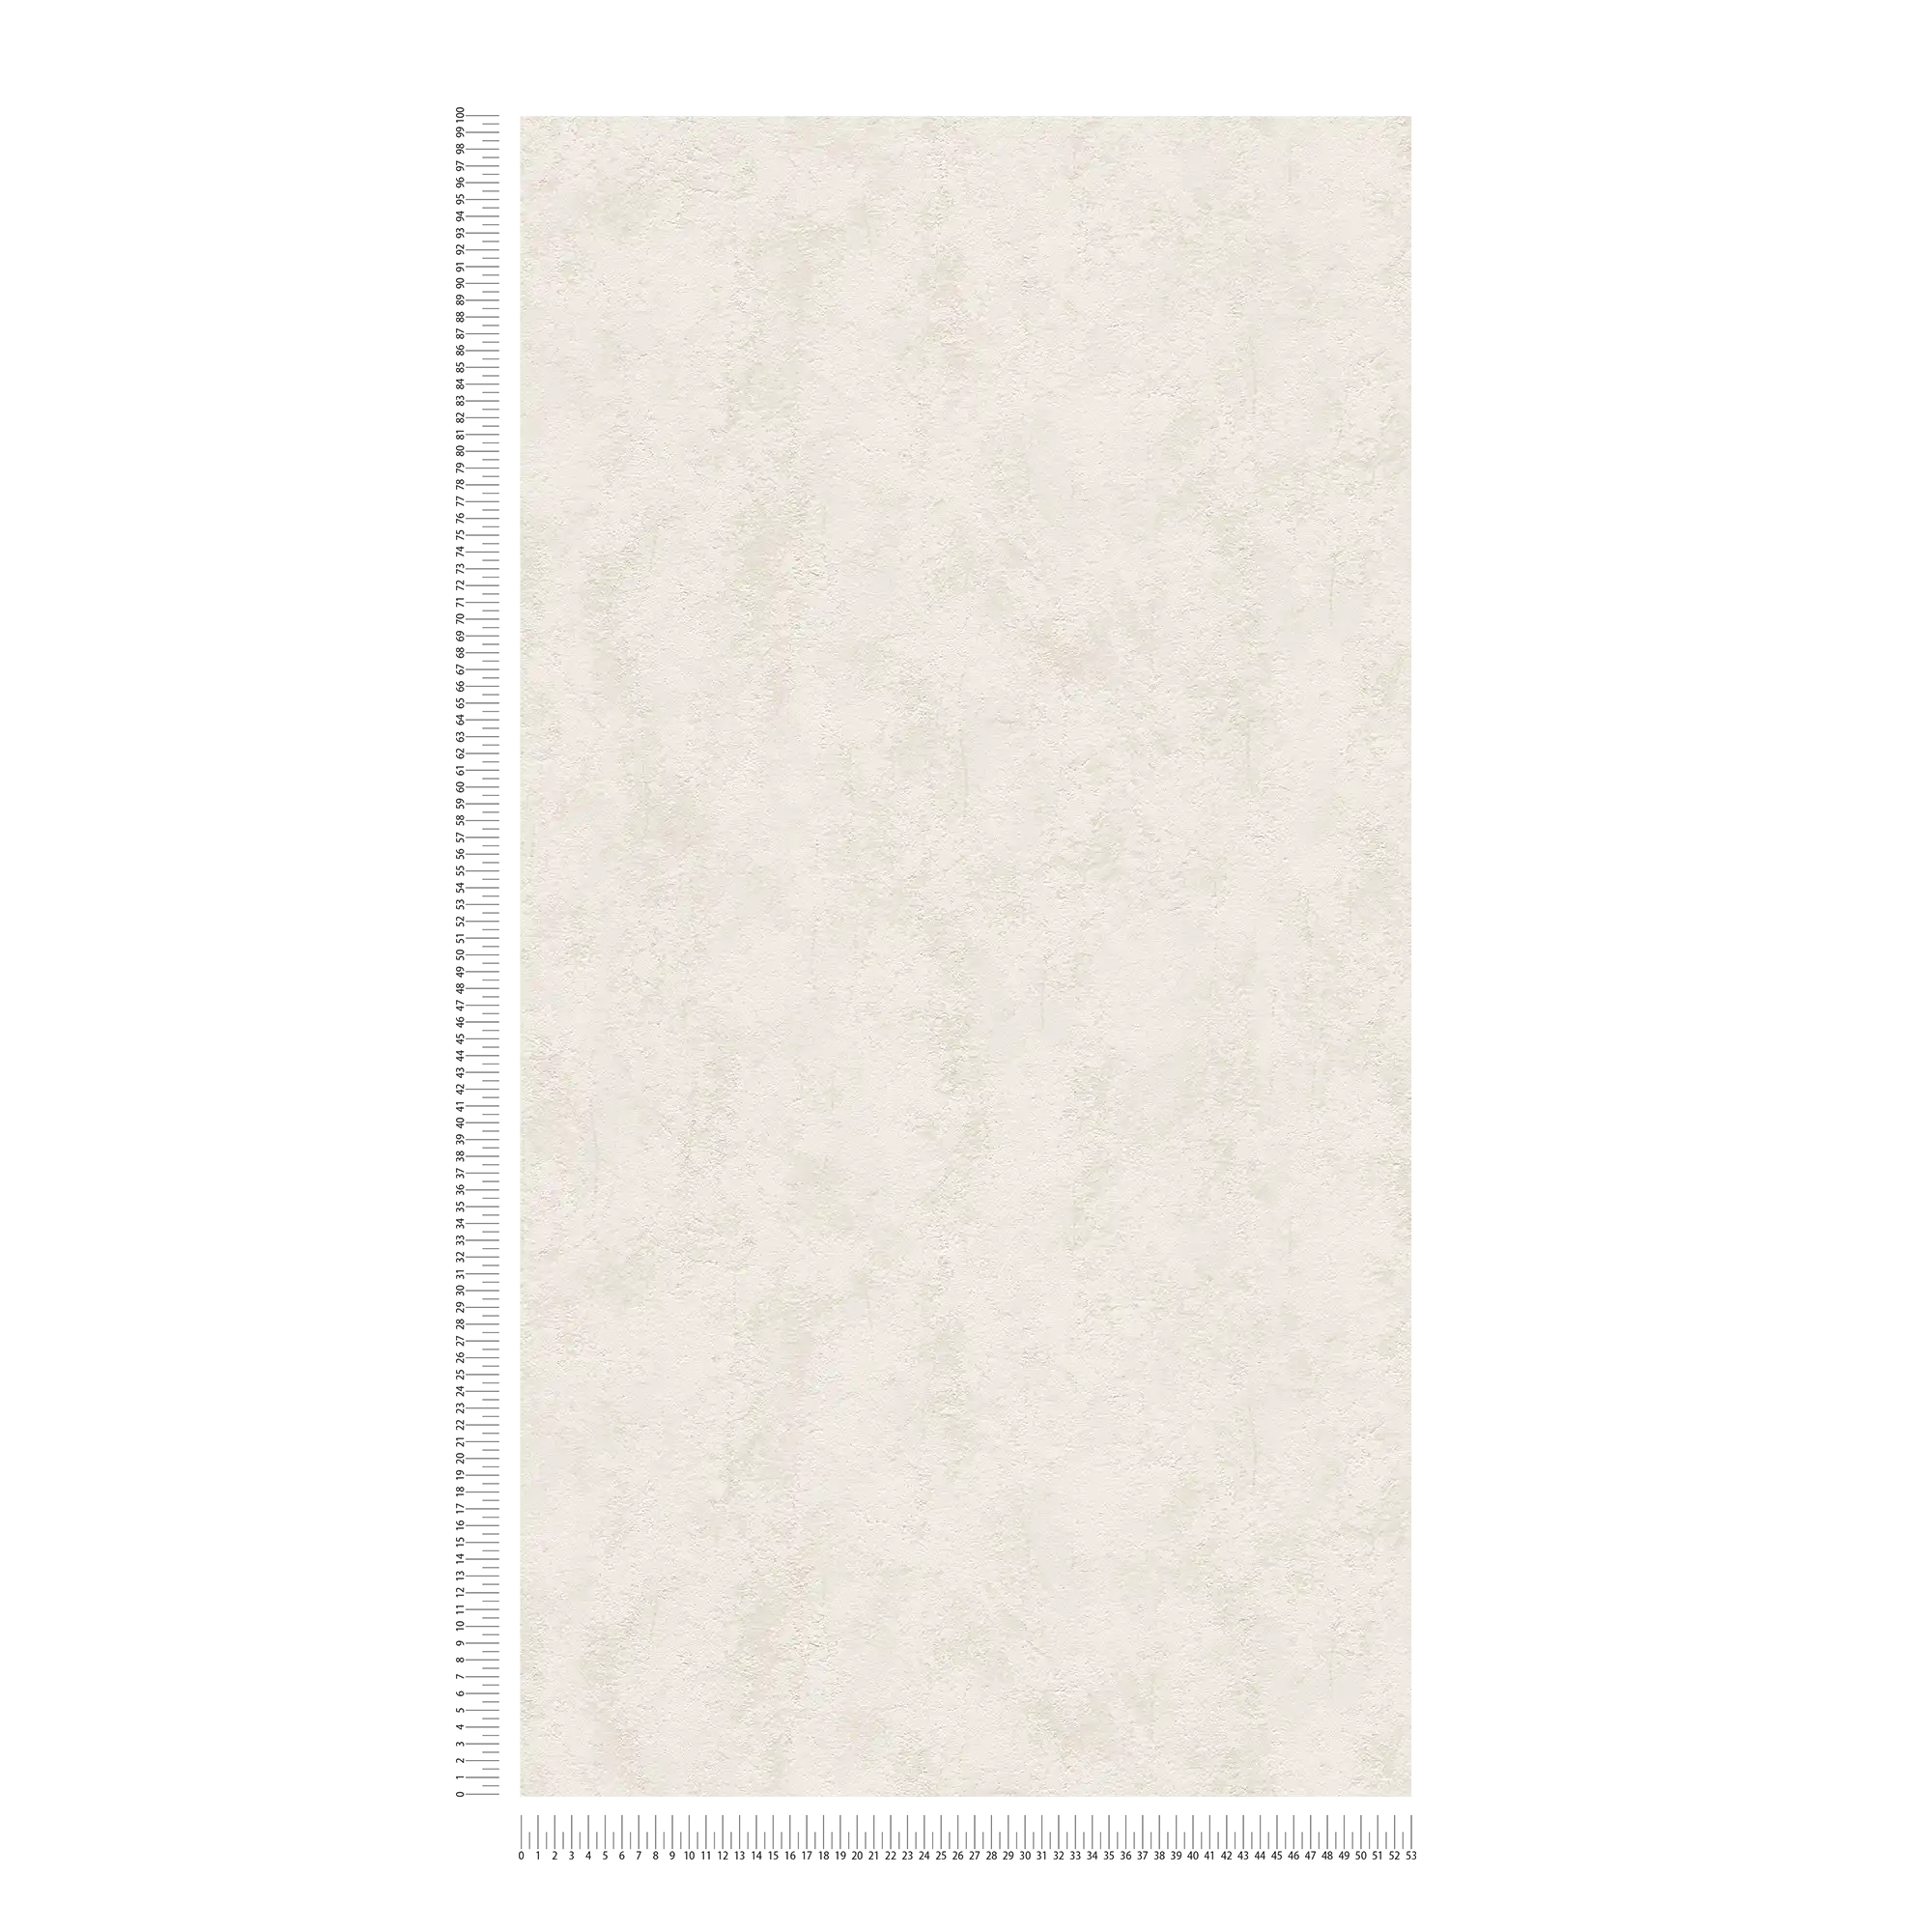             Carta da parati in tessuto non tessuto effetto gesso vintage con texture superficiale - beige
        